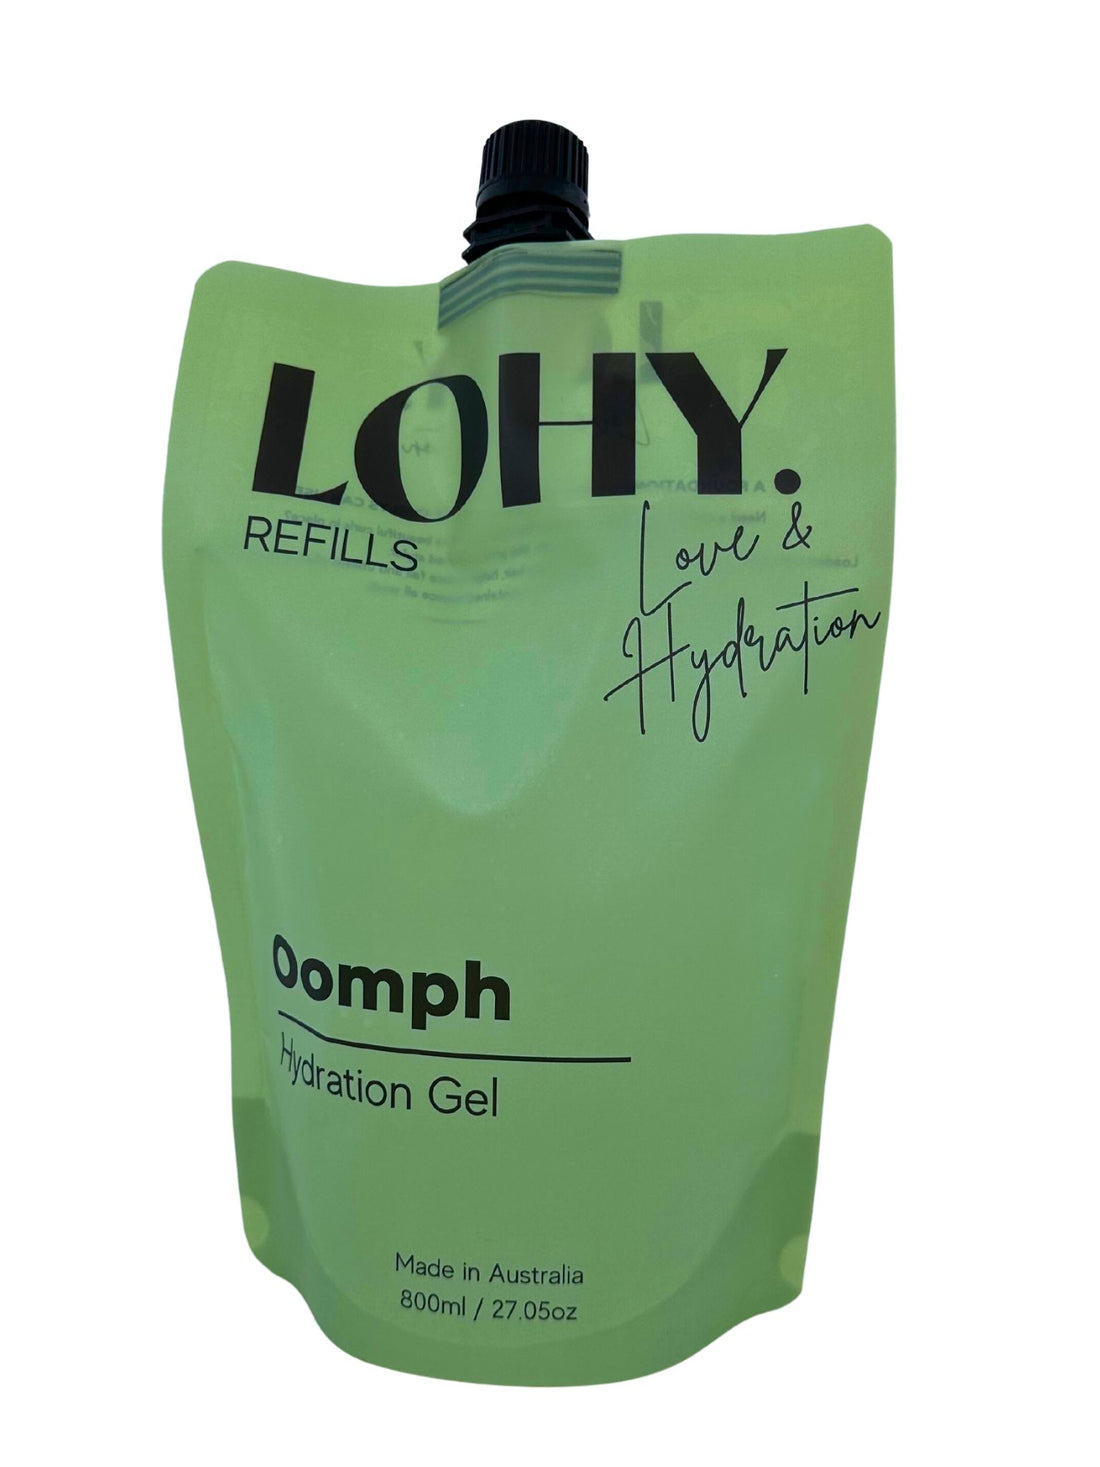 Oomph Hydration Gel 800ml Refill Pouch